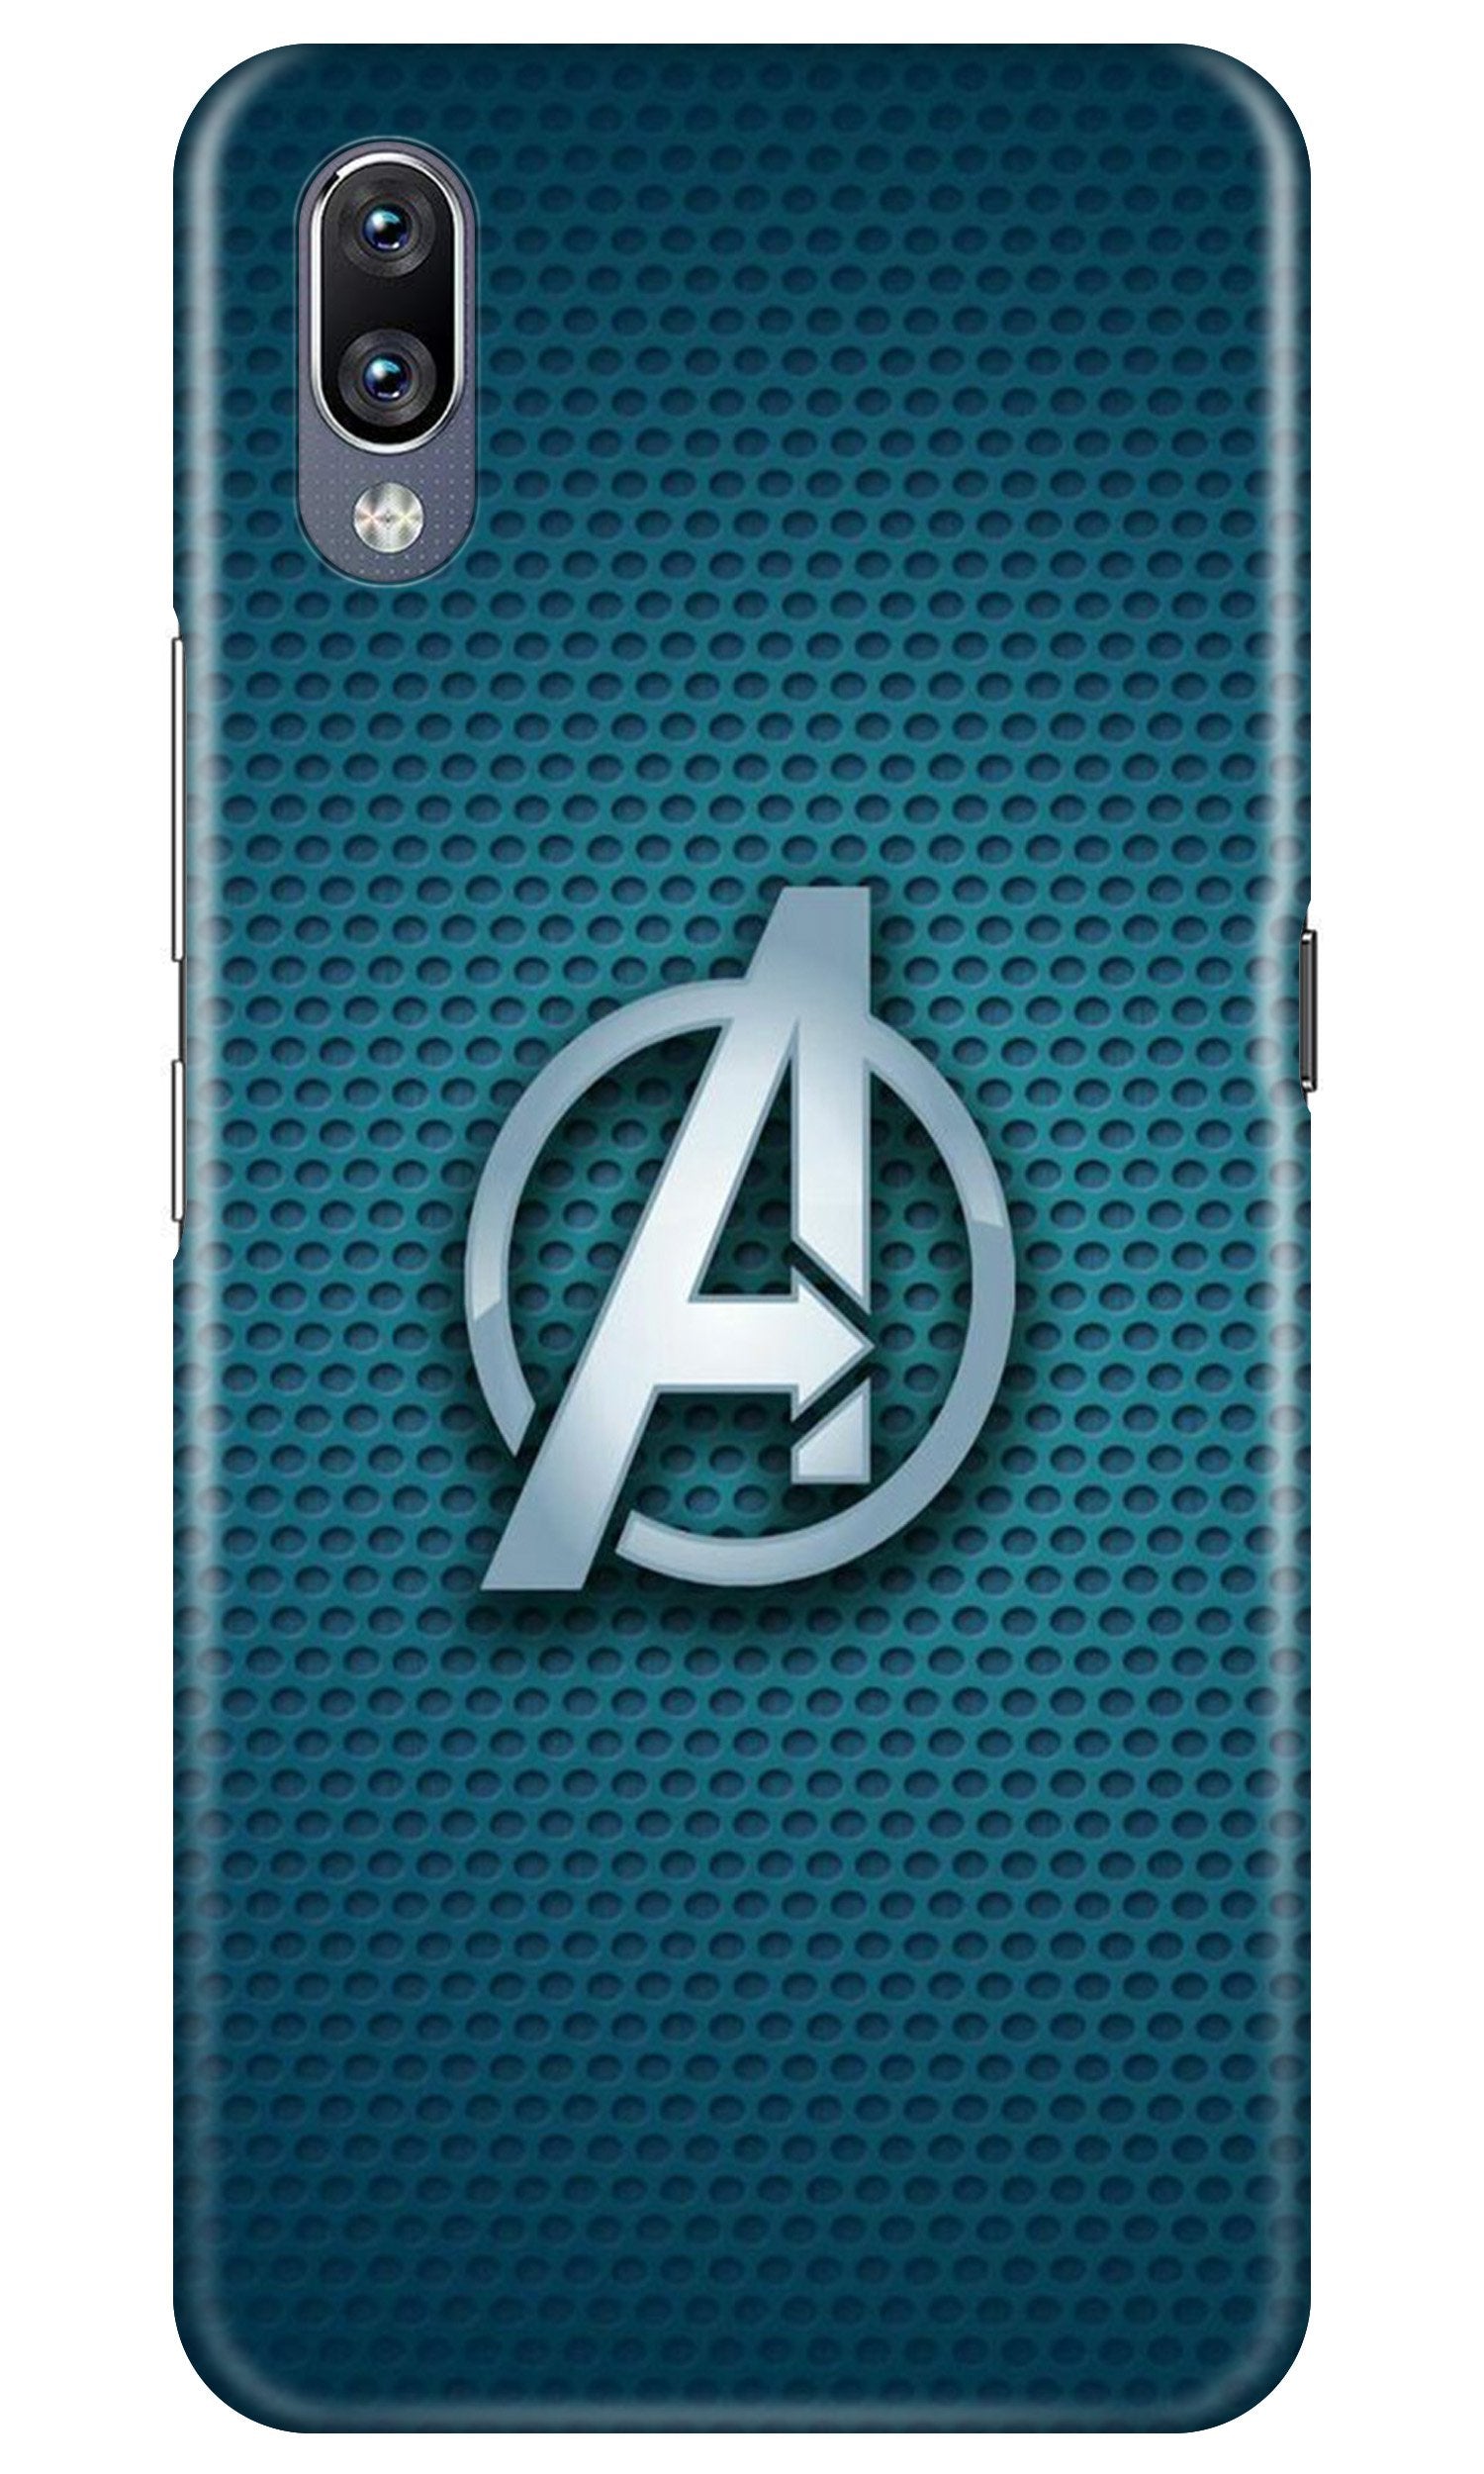 Avengers Case for Vivo V11 Pro (Design No. 246)